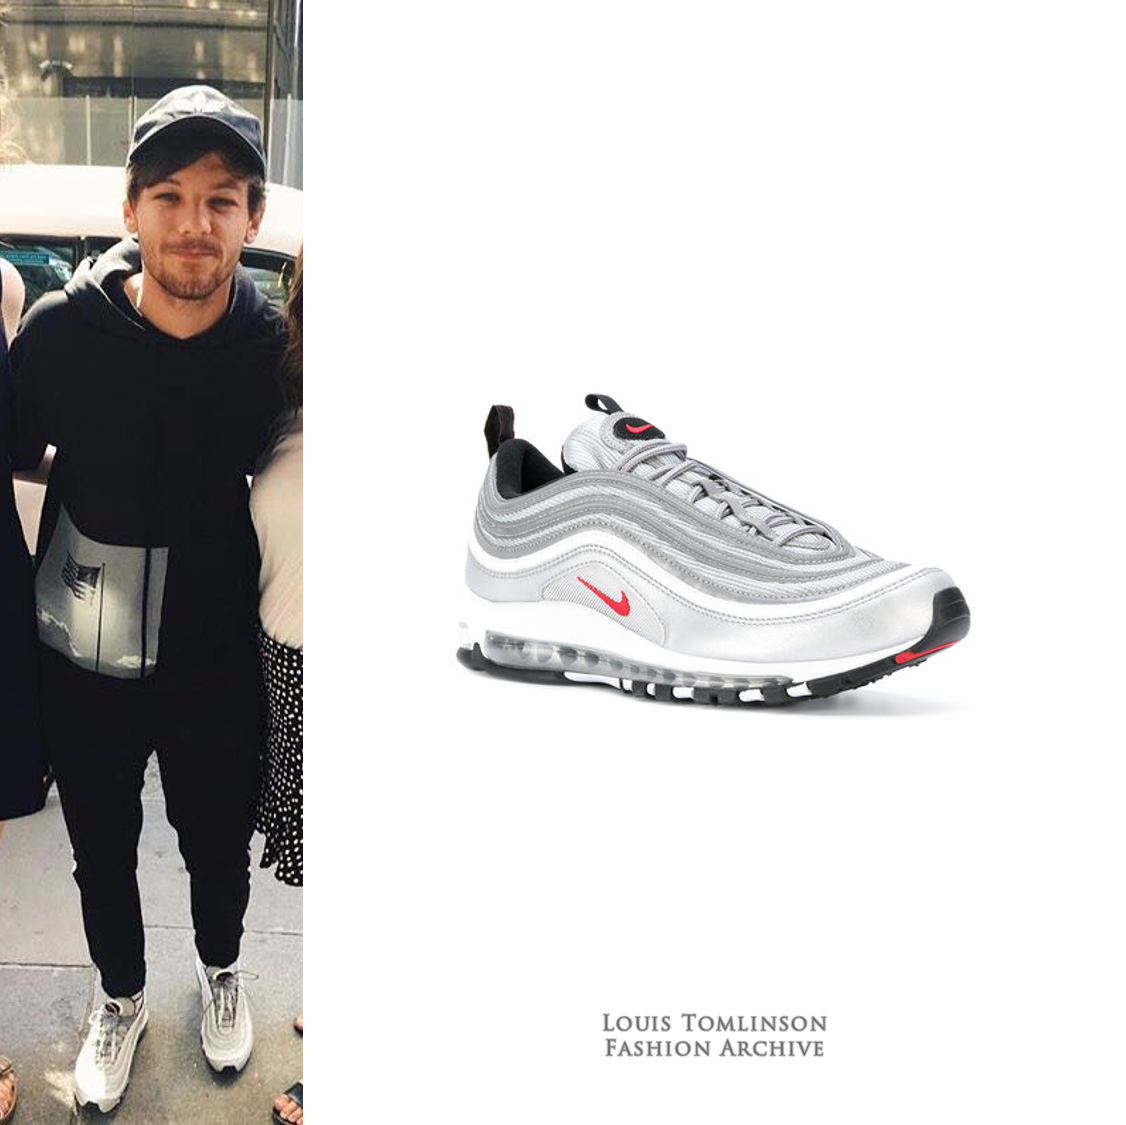 Louis Tomlinson Fashion on X: Louis wore this Nike Sportswear